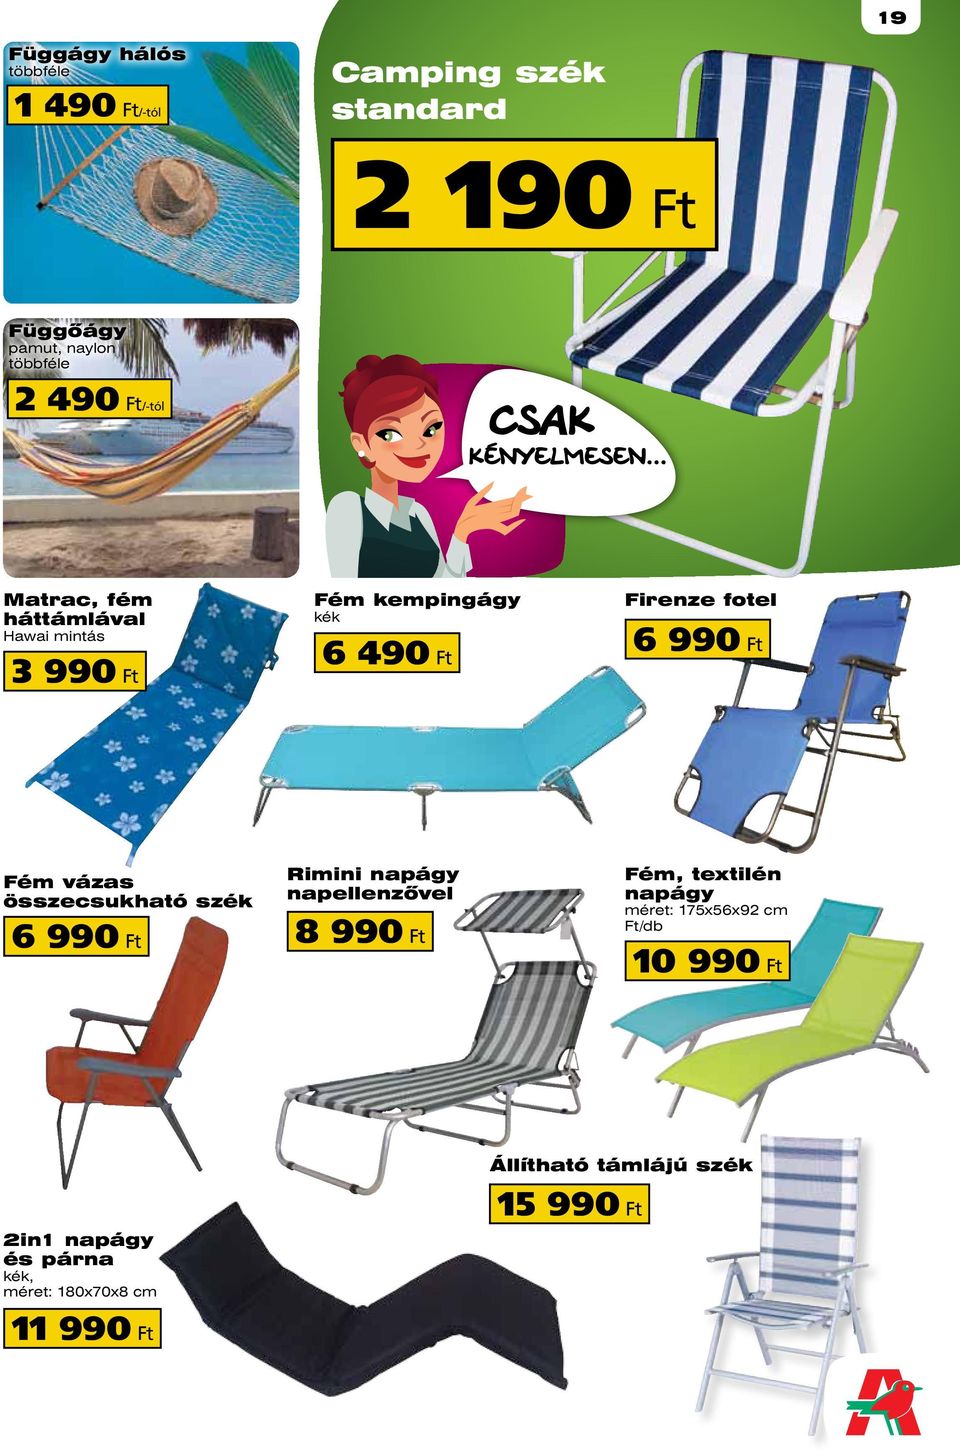 ft Fém vázas összecsukható szék Rimini napágy napellenzővel 6 990 ft 8 990 ft Fém, textilén napágy méret: